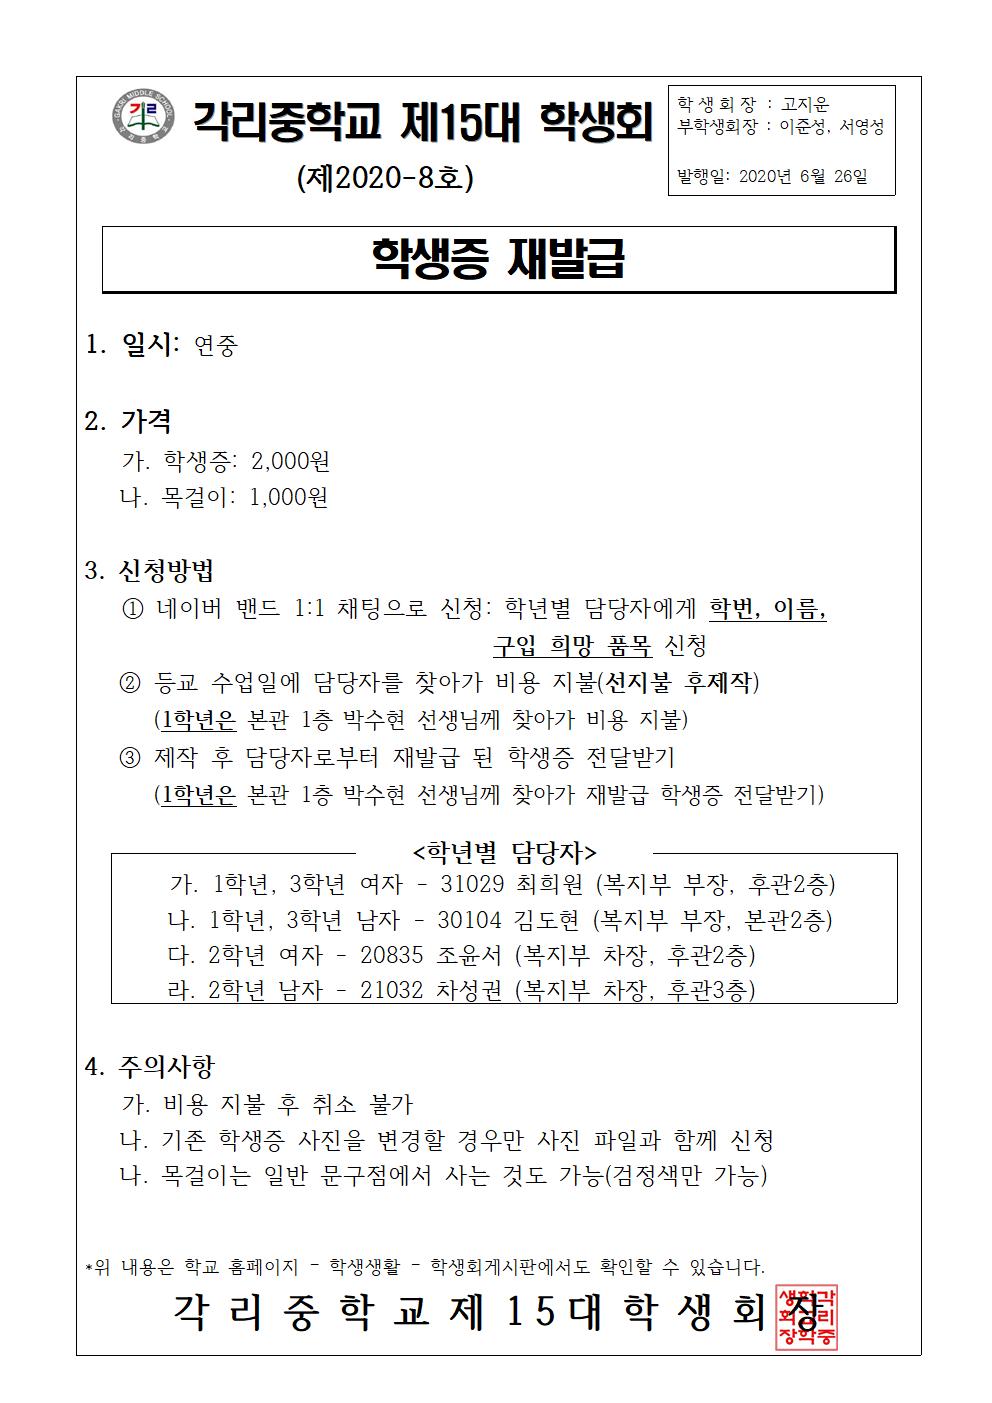 홍보물 8호(복지부) 학생증 재발급001